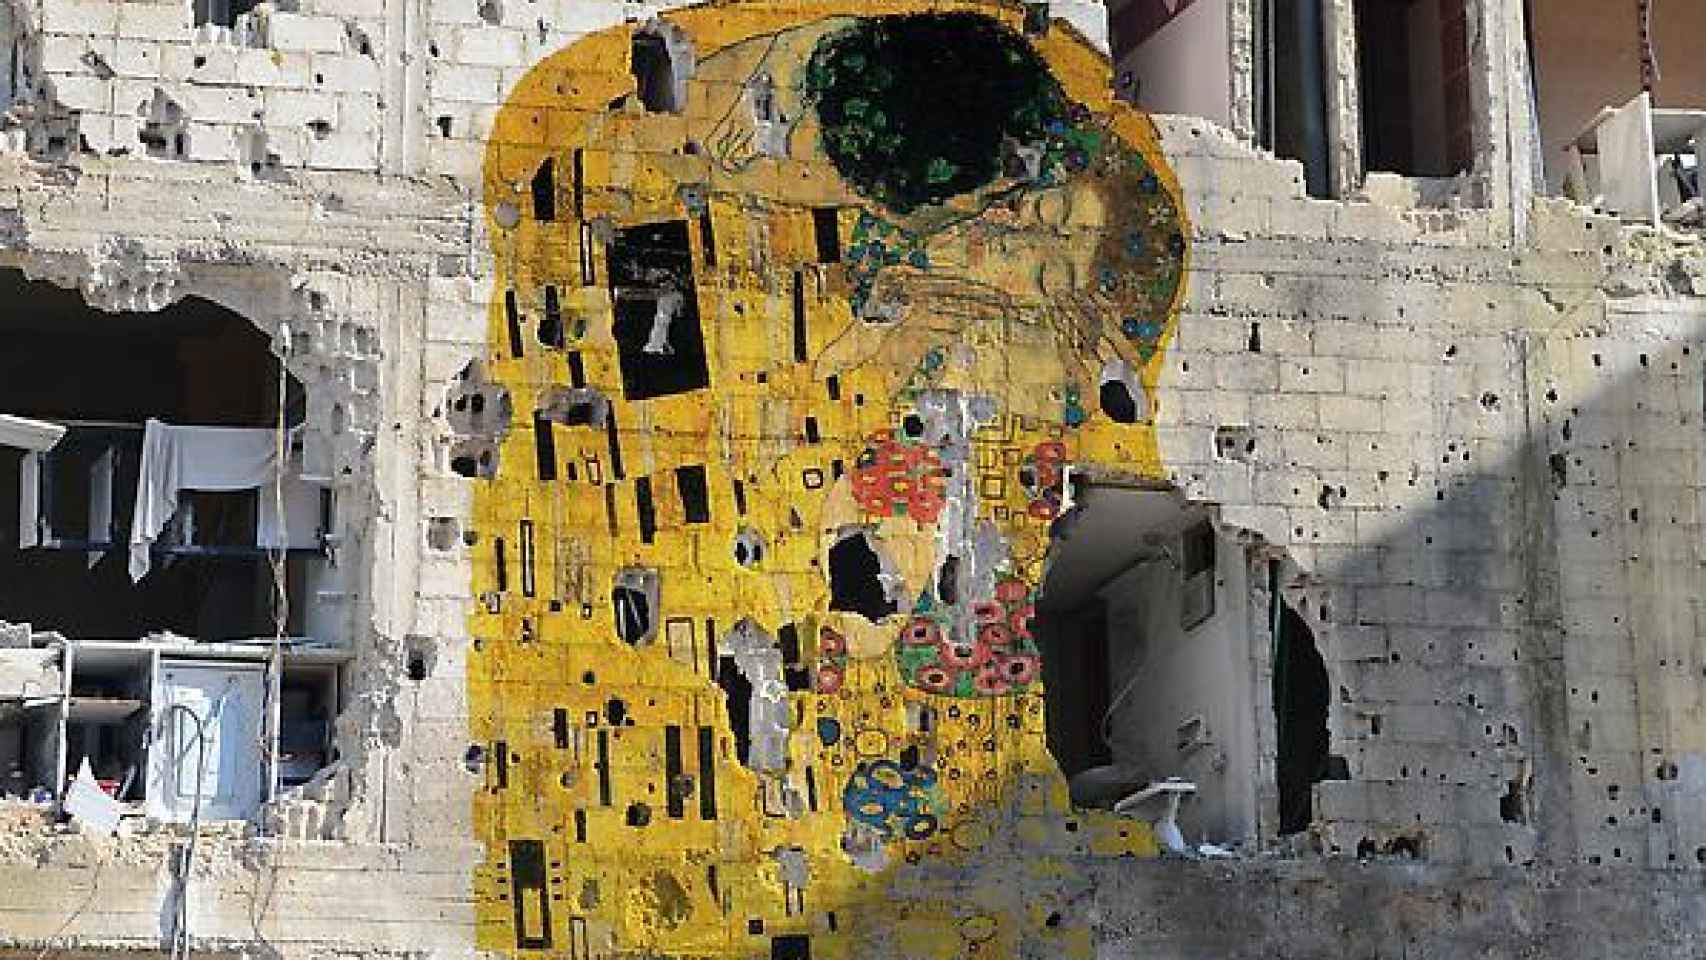 El beso de Klimt, en la fachada de un edificio destruido.